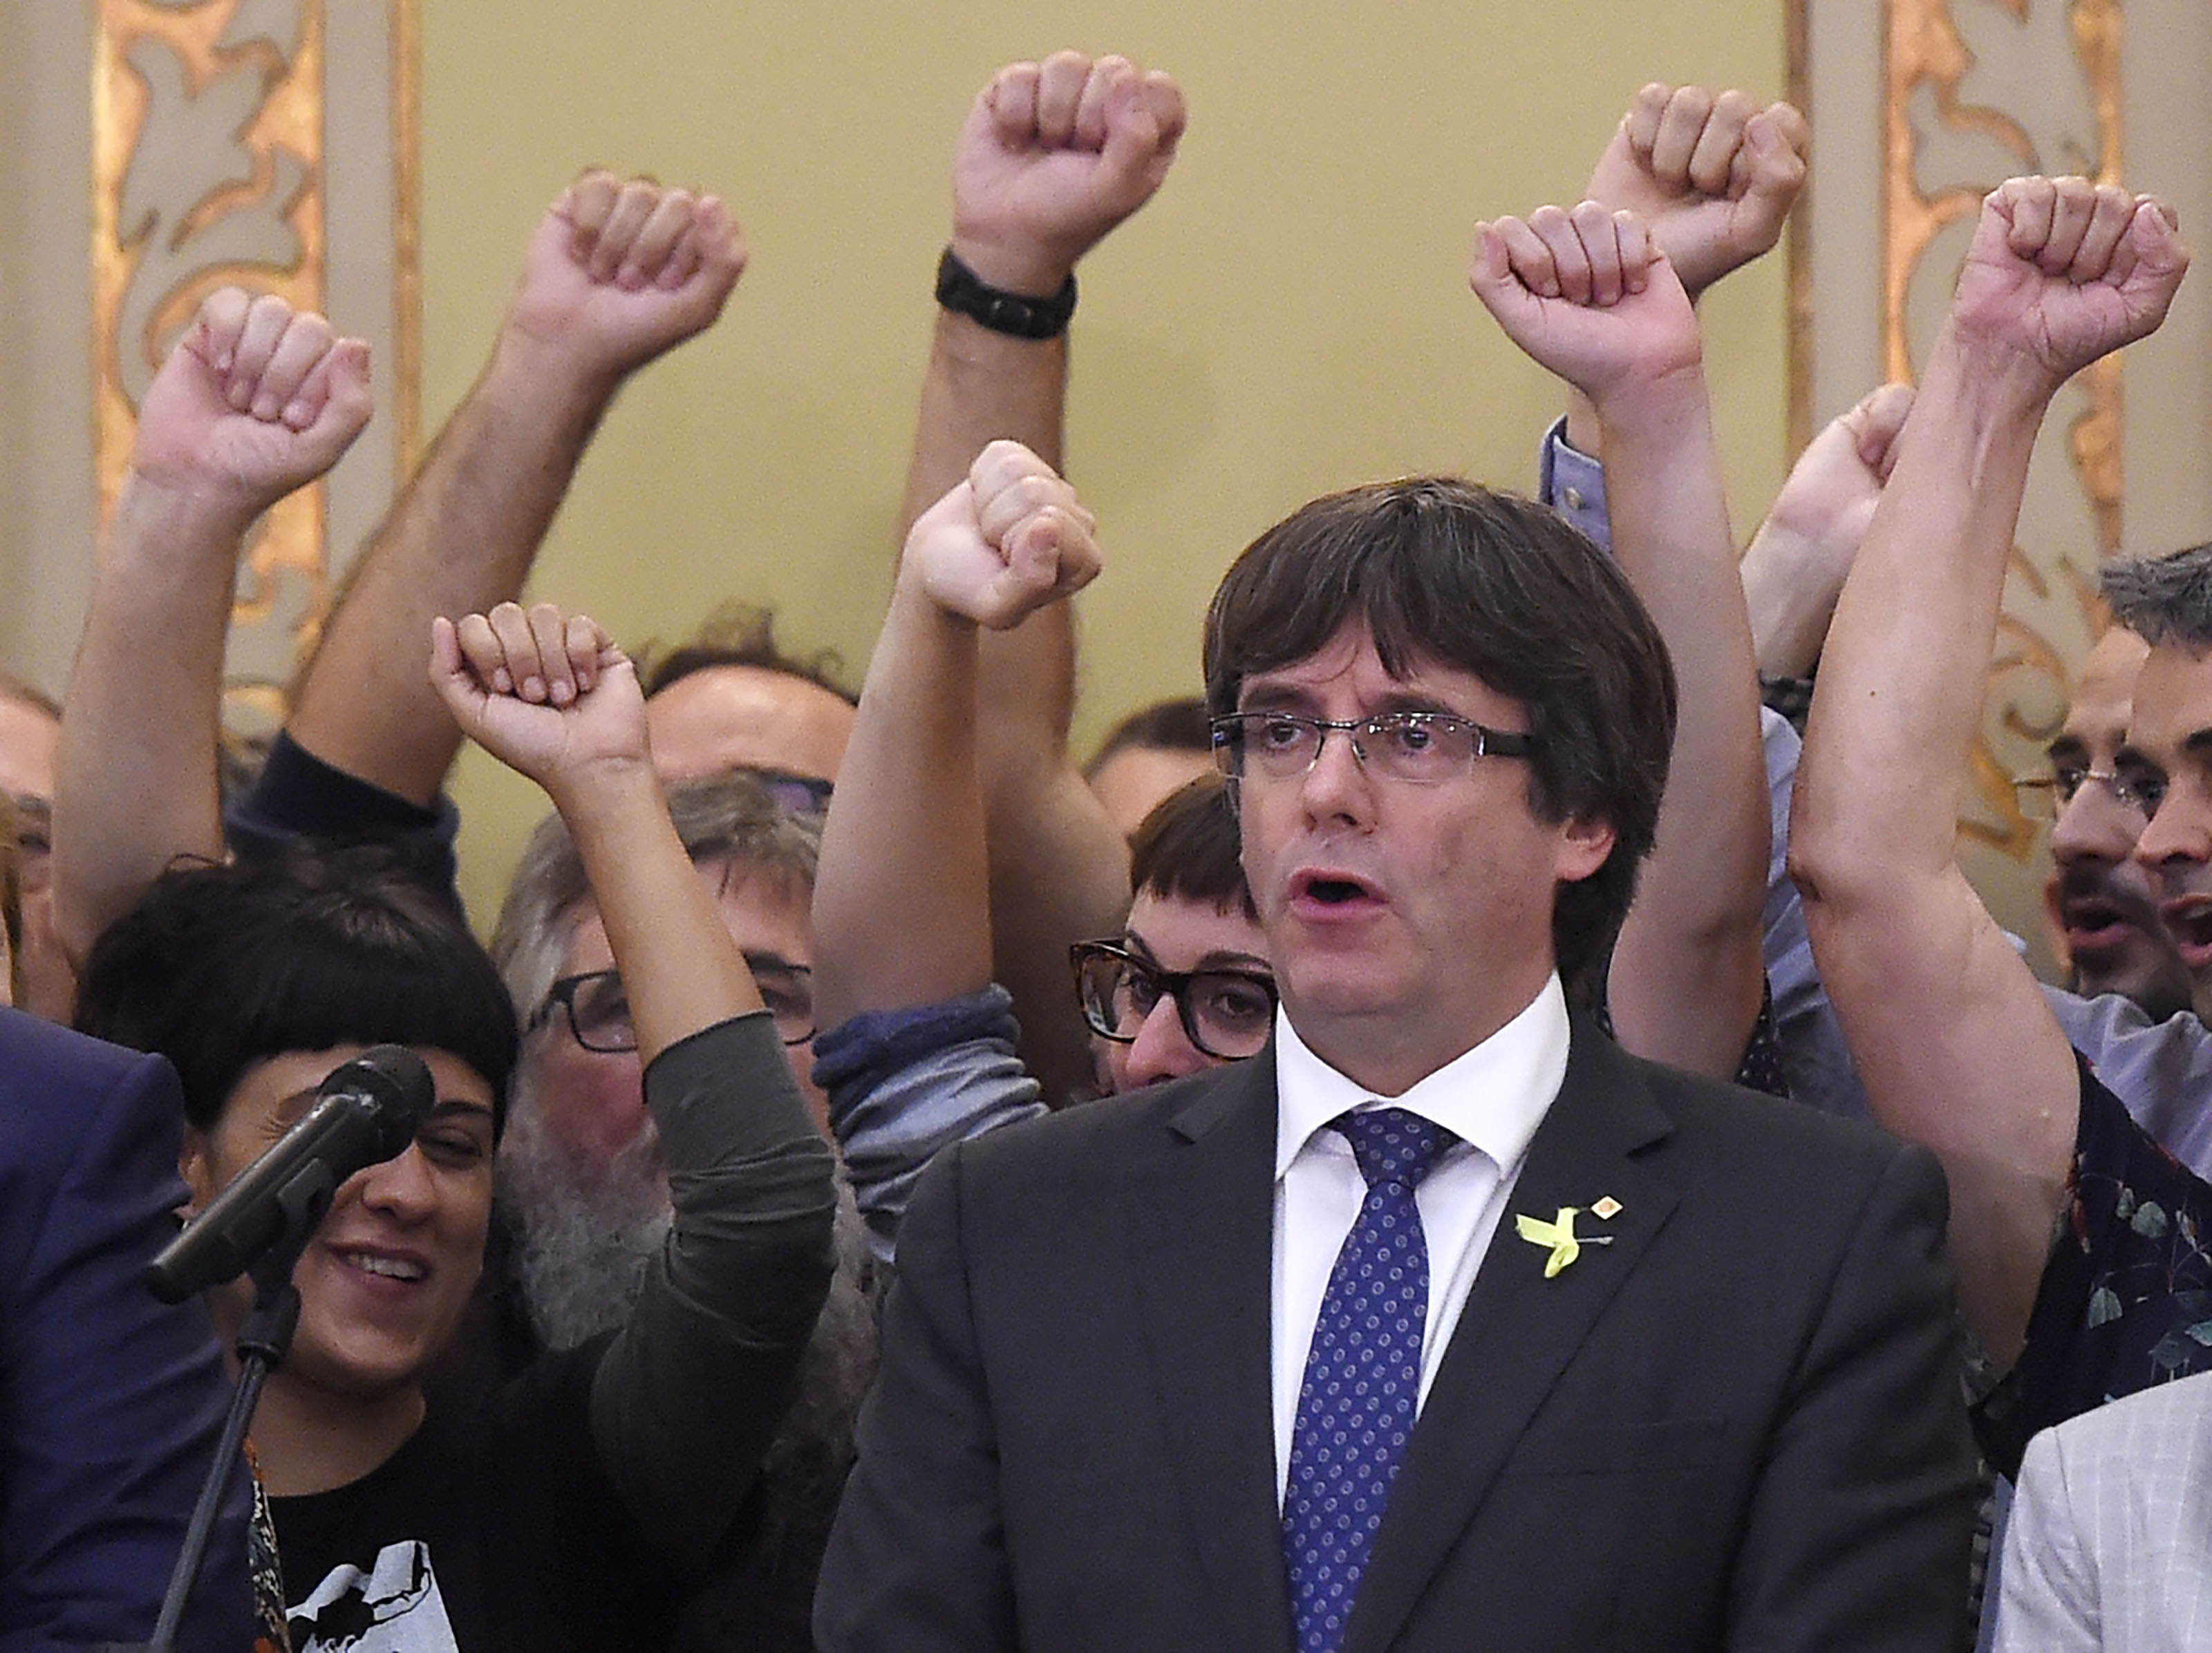 Lemondott az elnökjelöltségről Carles Puigdemont volt katalán elnök